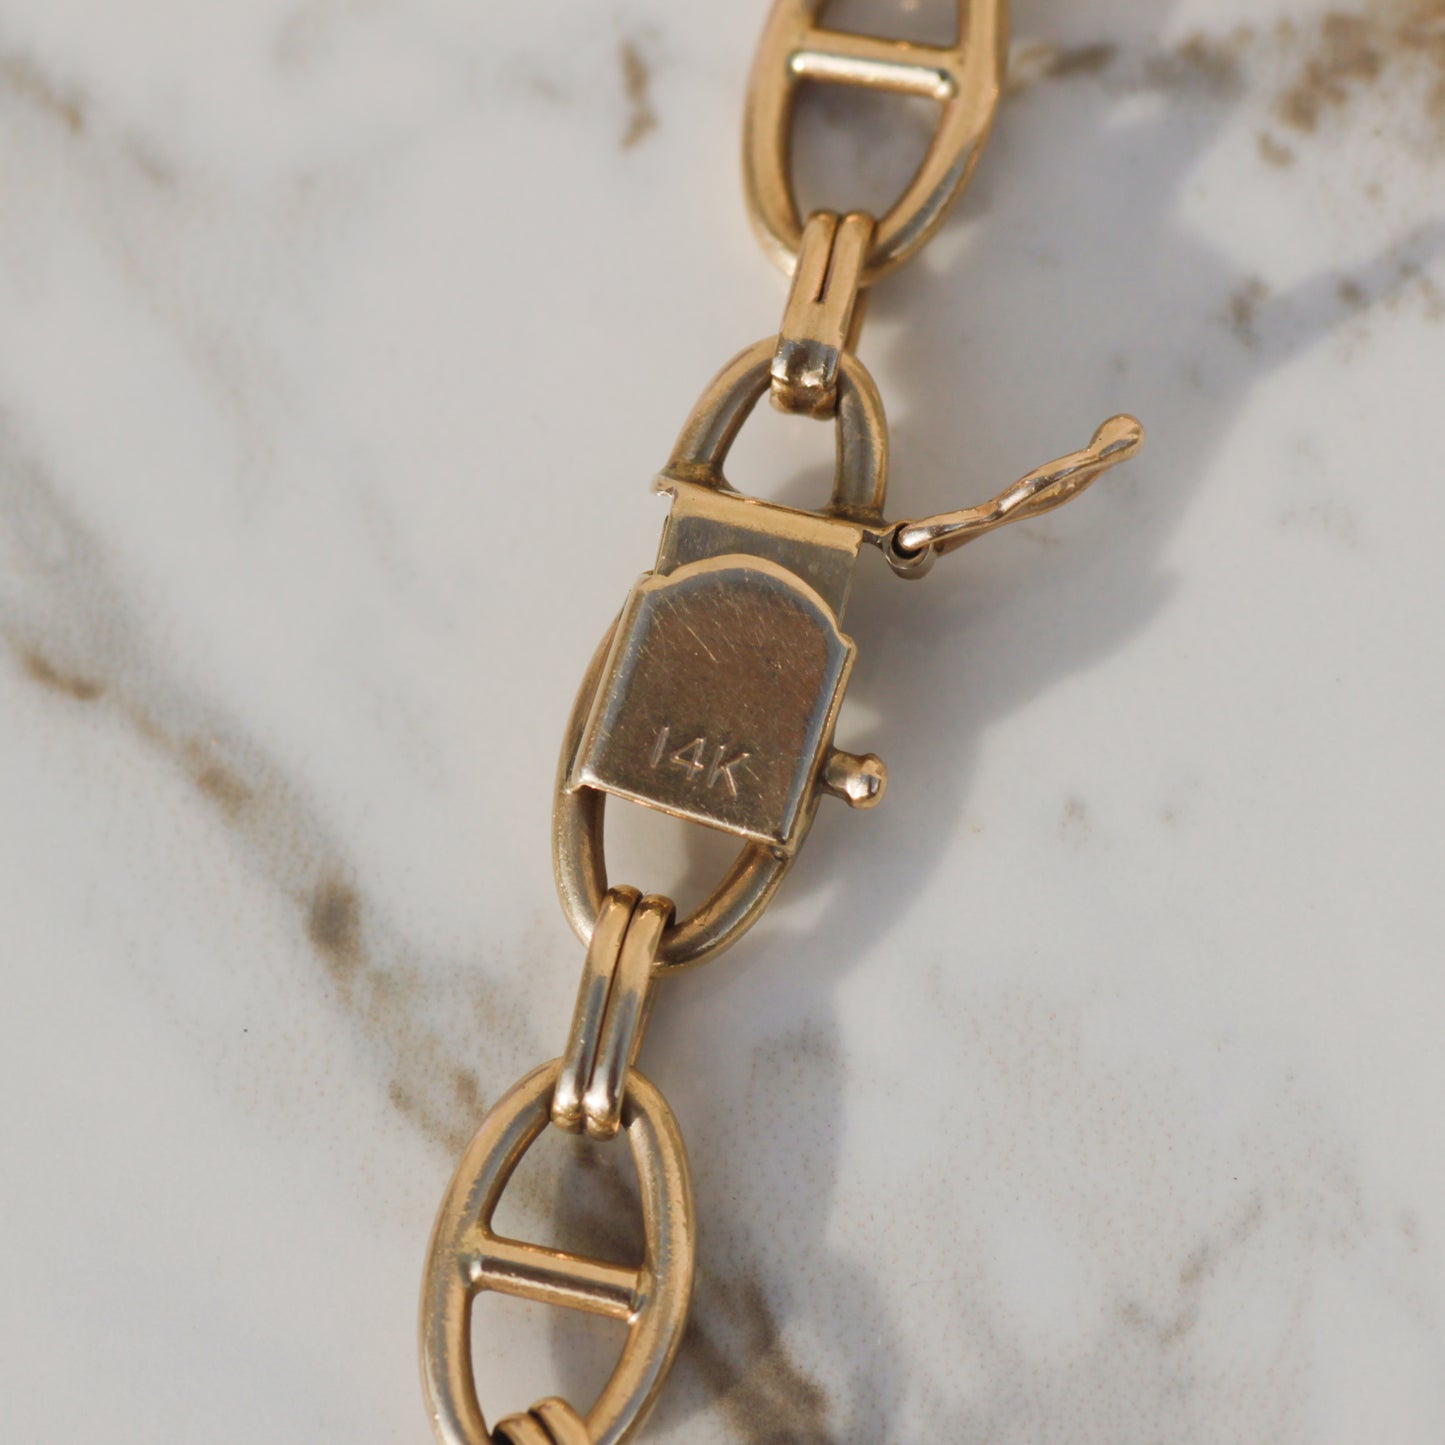 Vintage Mariner Link Bracelet 8" 14k Gold